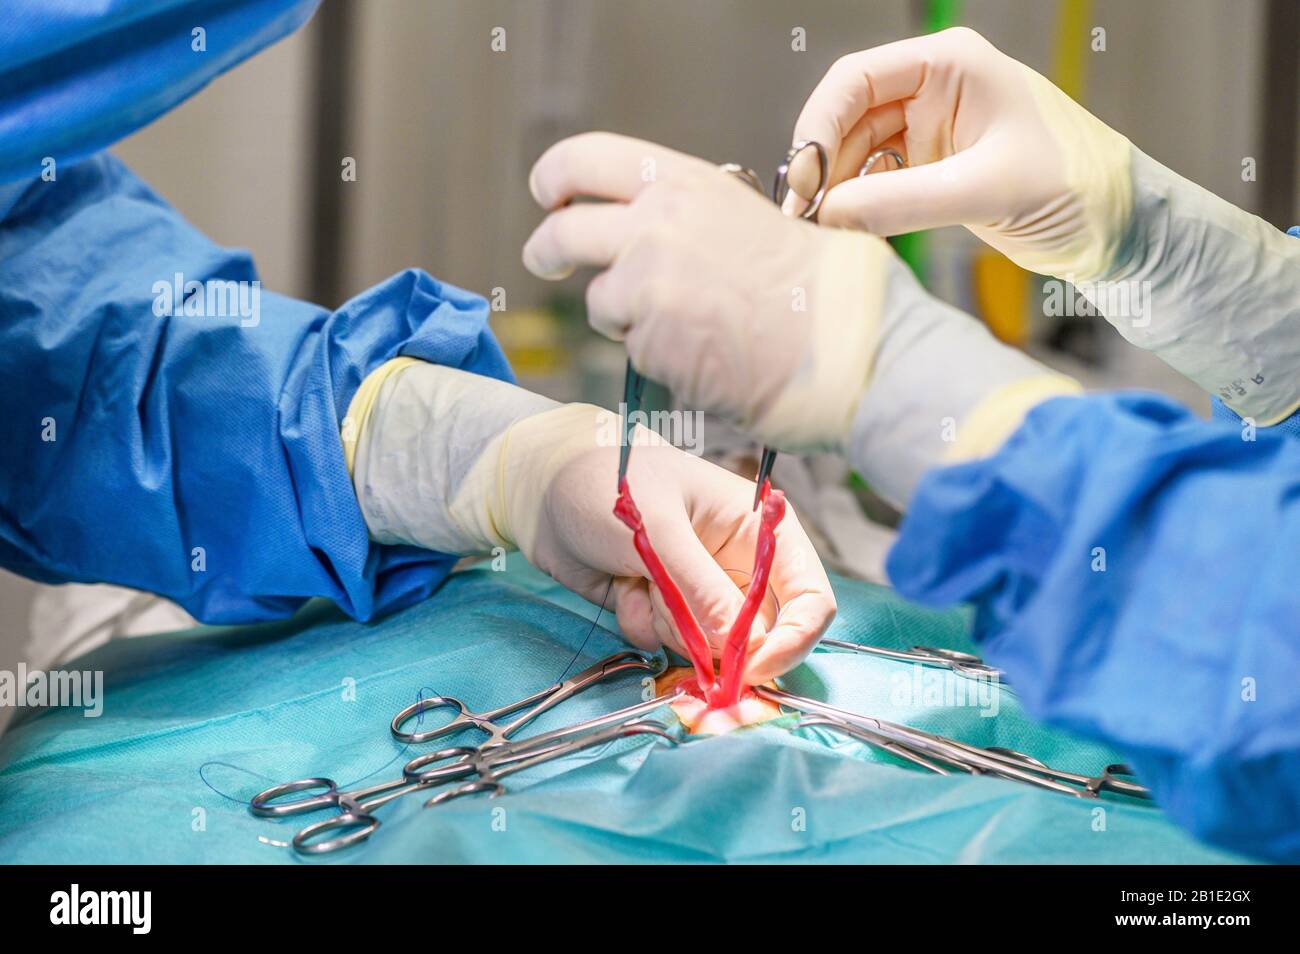 Tierärzteteam operiert eine Katze. Sterilisation einer Katze Nahaufnahme.  Bauchoperation. Medizin, Pinzetten Stockfotografie - Alamy